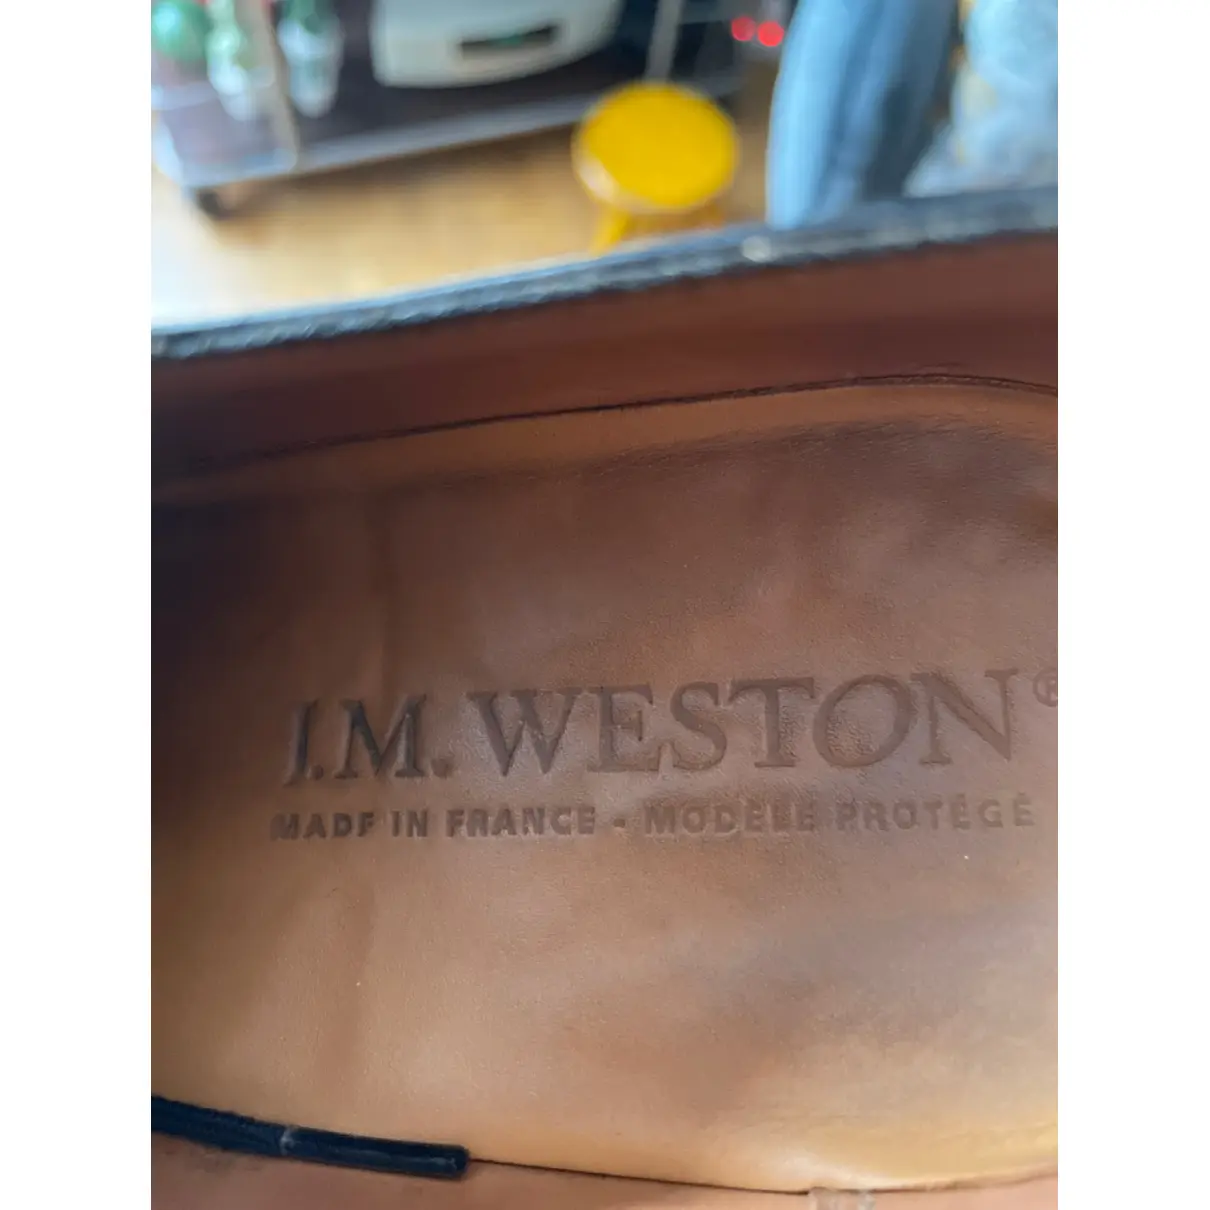 Leather lace ups JM Weston